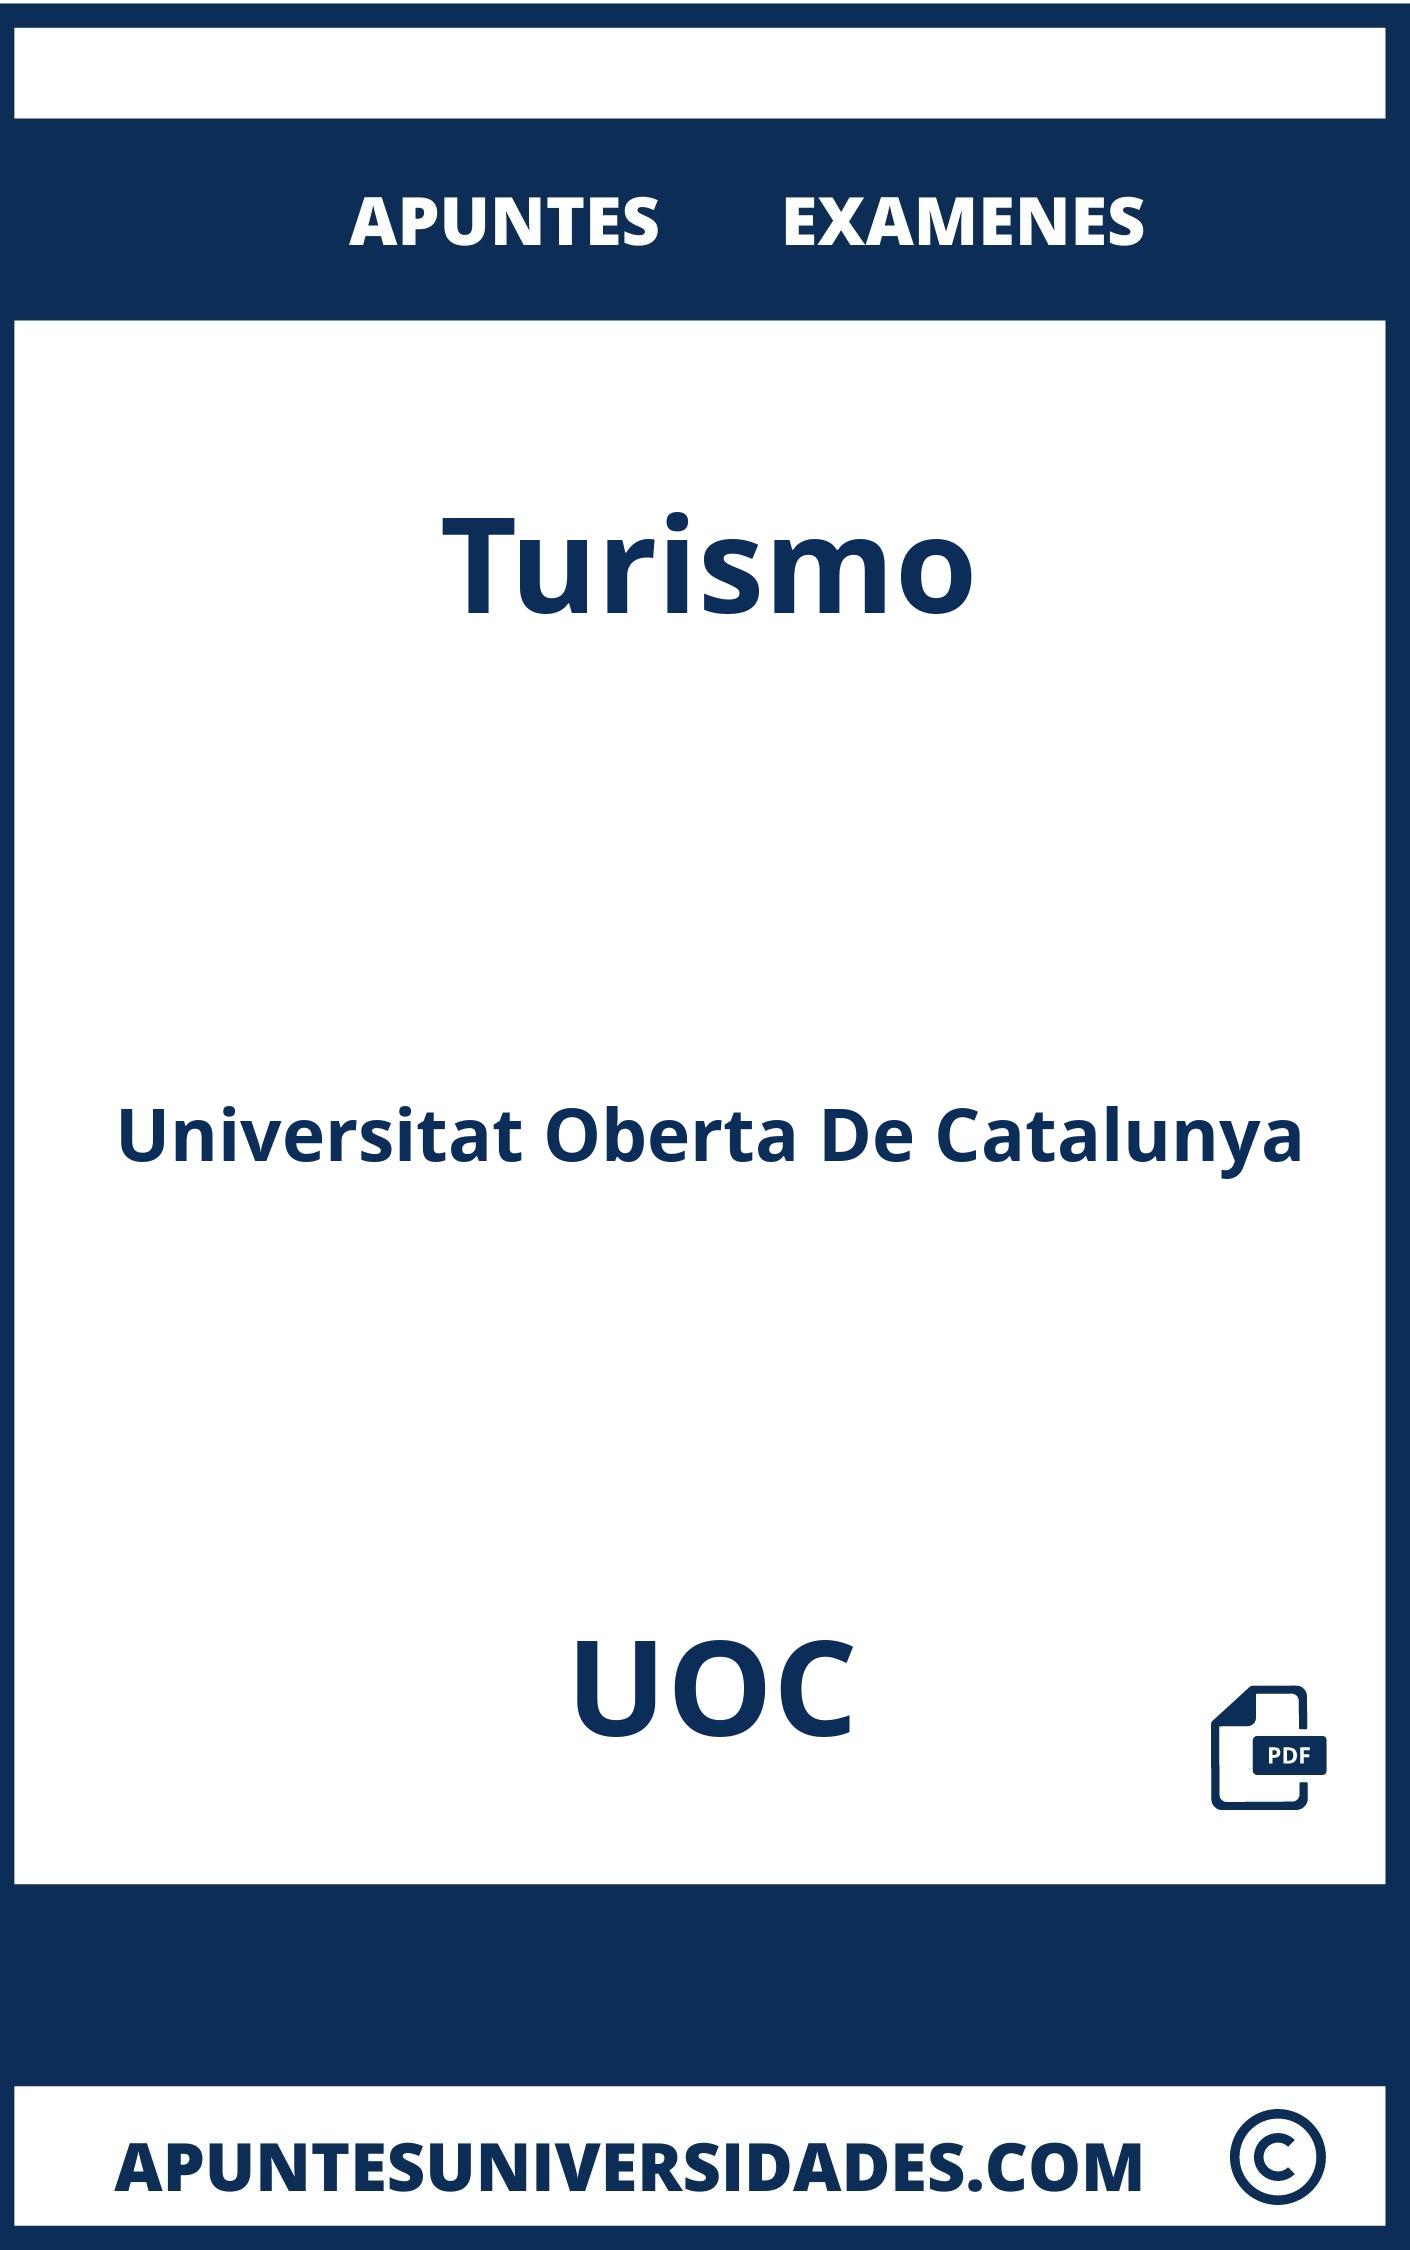 Apuntes Turismo UOC y Examenes